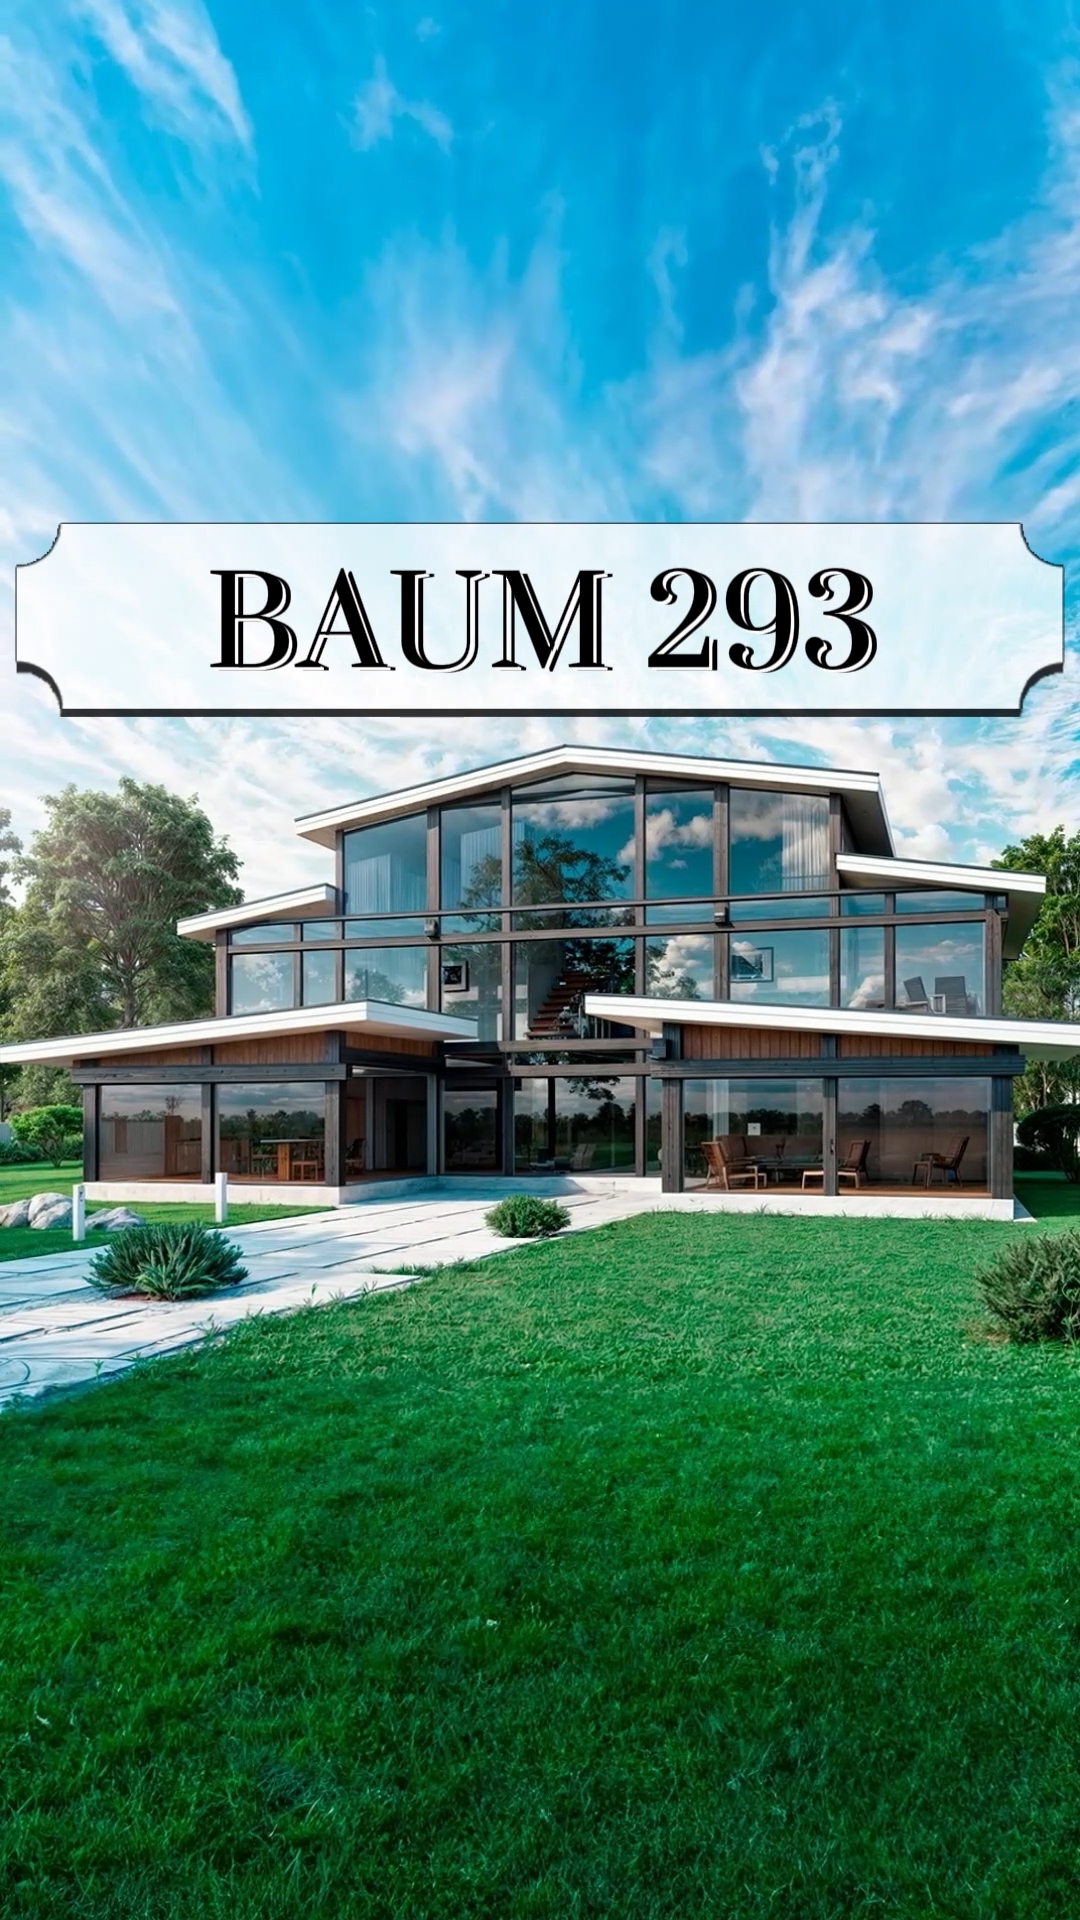 Фахверковый дом мечты Baum 293 🏡 | Стильный дизайн и панорамное остекление